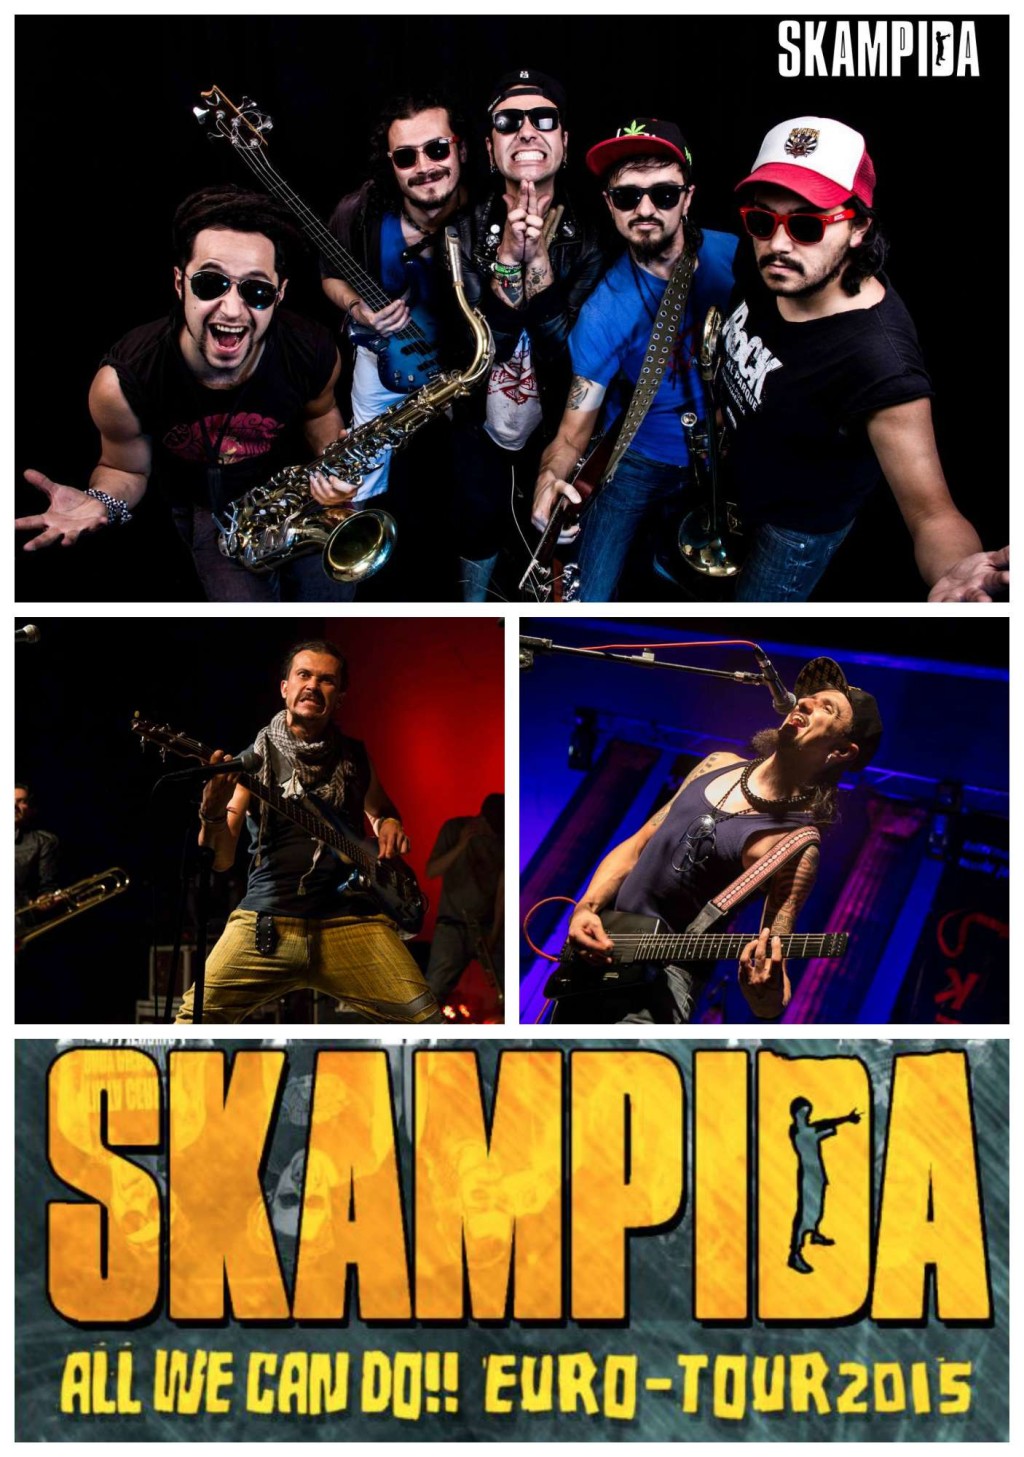 Die 5-köpfige kolumbianische Band SKAMPIDA präsentiert mit ihrem Rock-Mestizo einen wilden Mix aus Reggae, kolumbianischer Folklore, Cumbia, HipHop und Punk Musik. Aufgrund ihrer energetischen live Shows haben sie bereits einige Auszeichnungen südamerikanischer Musikzeitschriften eingeheimst. Hier wird gesungen, getanzt und geschwitzt!